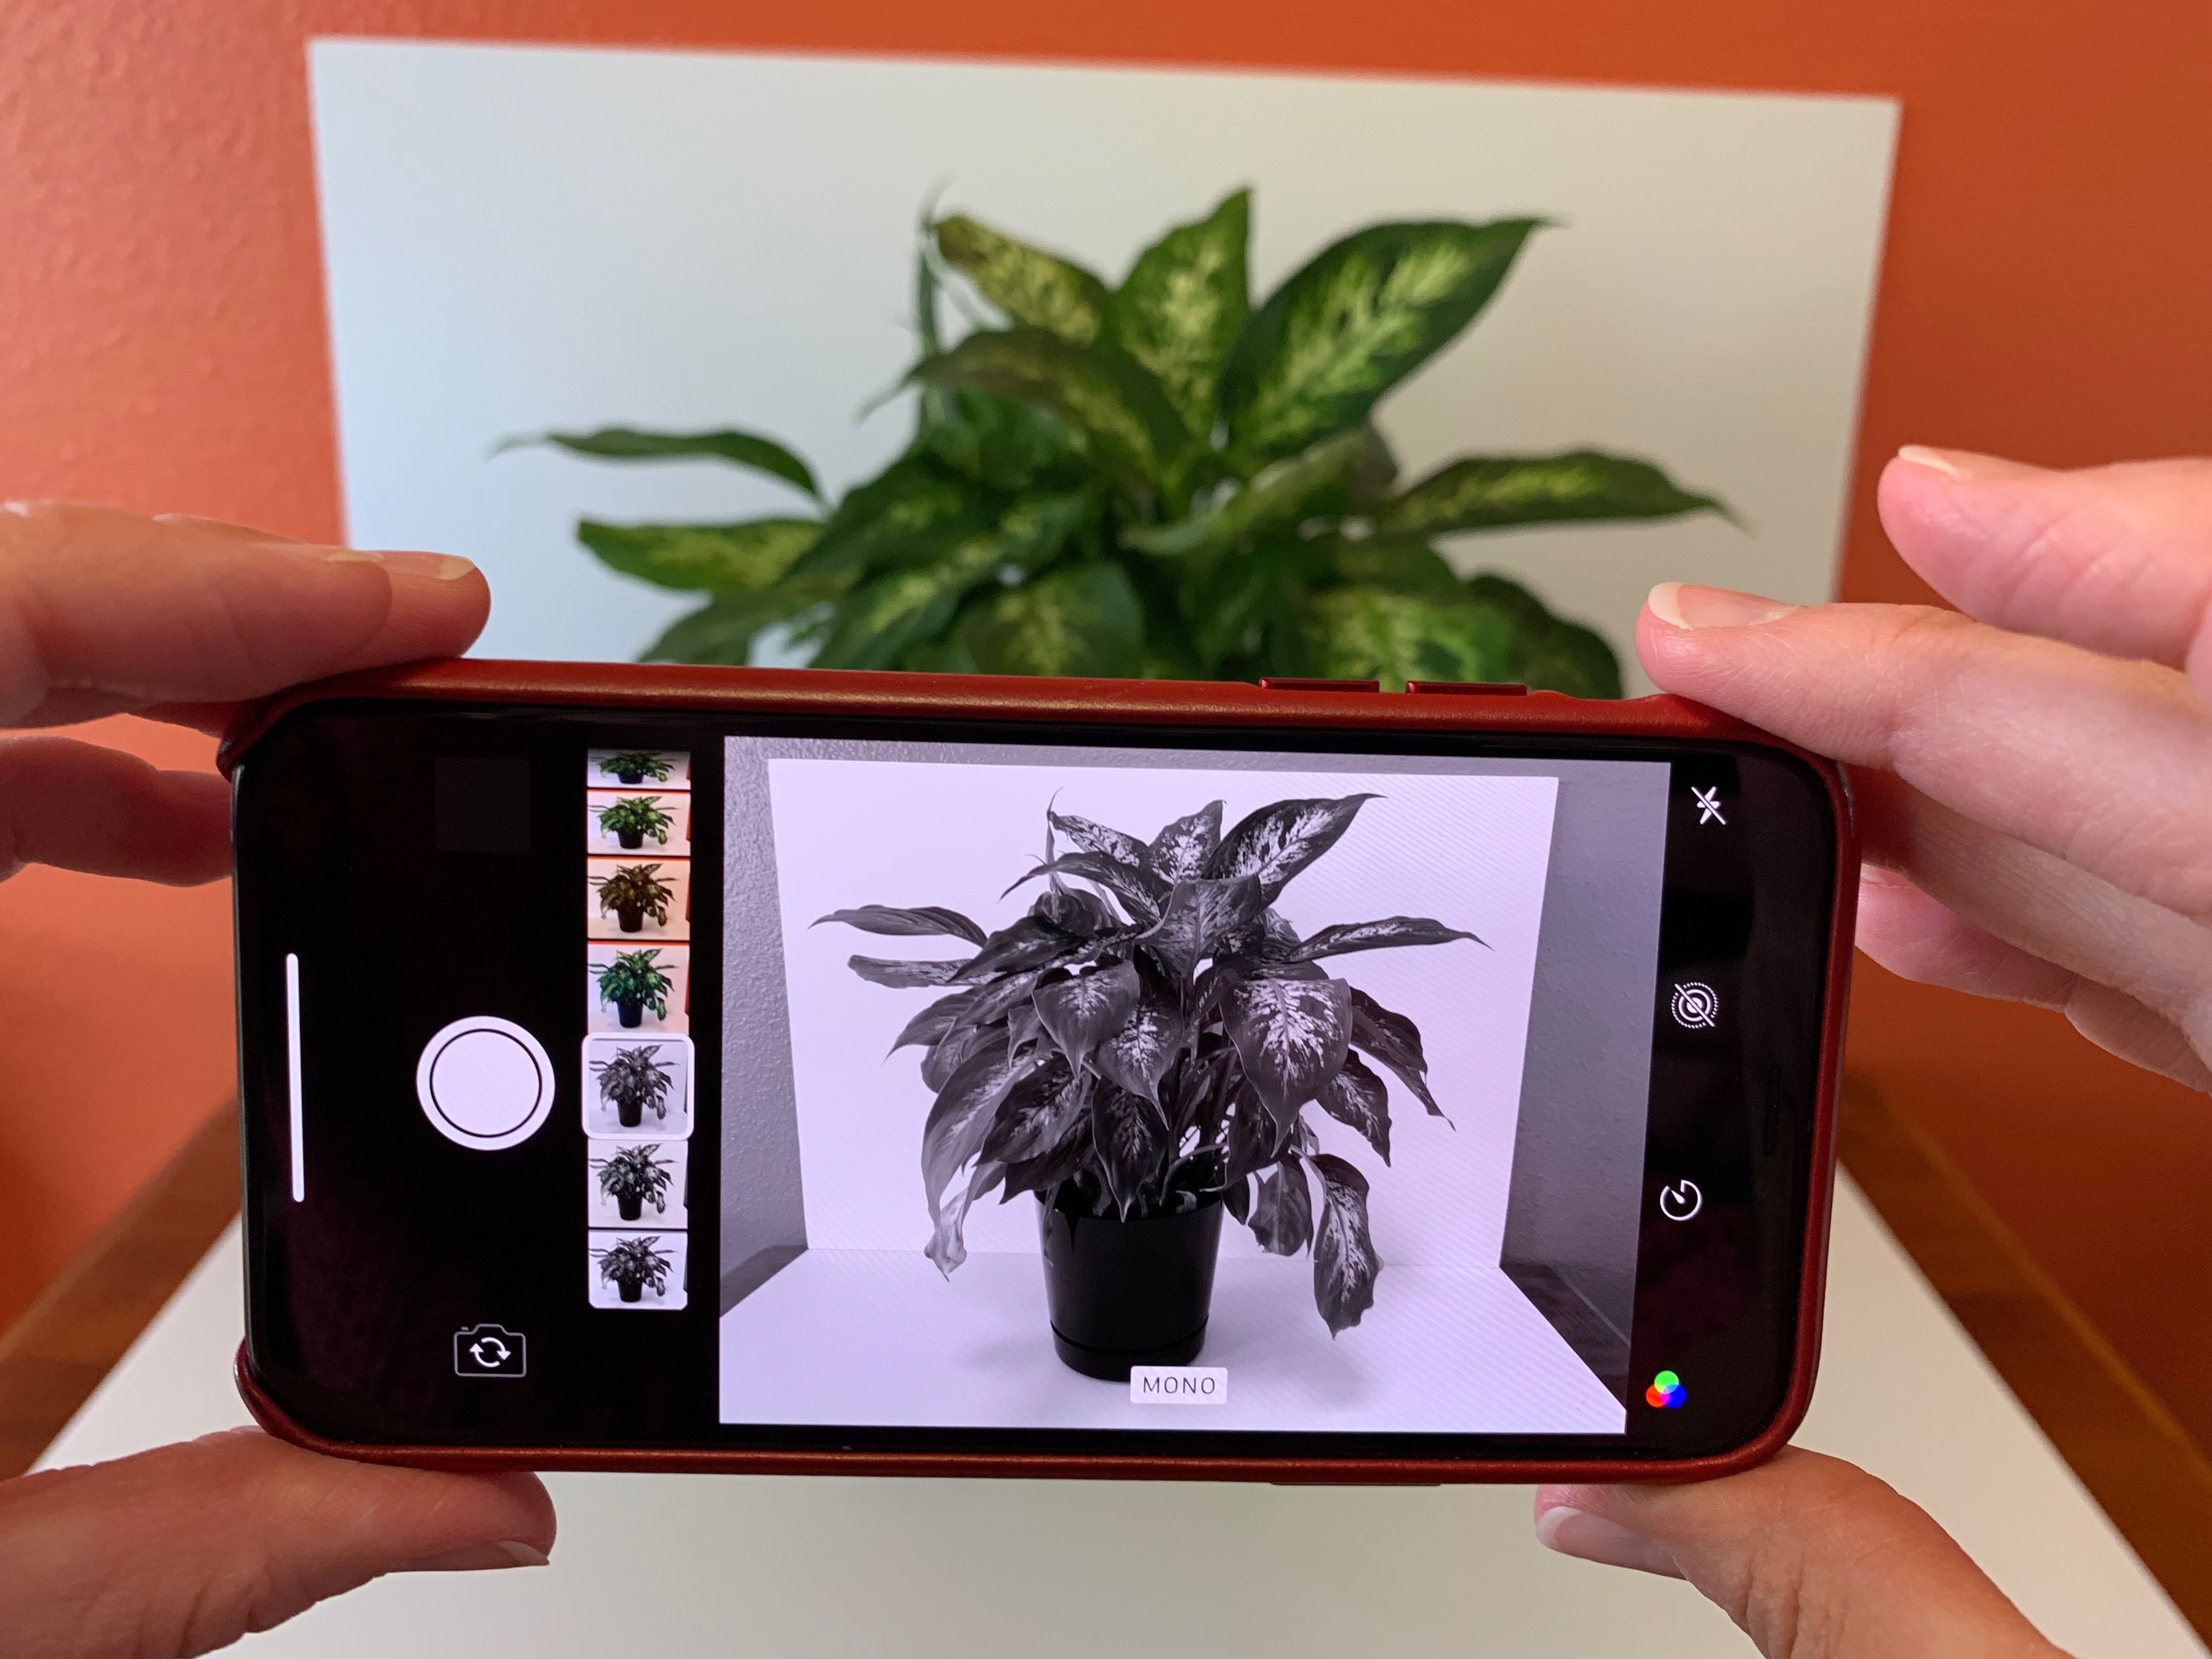 Fotografie iPhonu s aktivním filtrem MONO, zobrazuje předmět rostliny v různých odstínech od bílé po černou